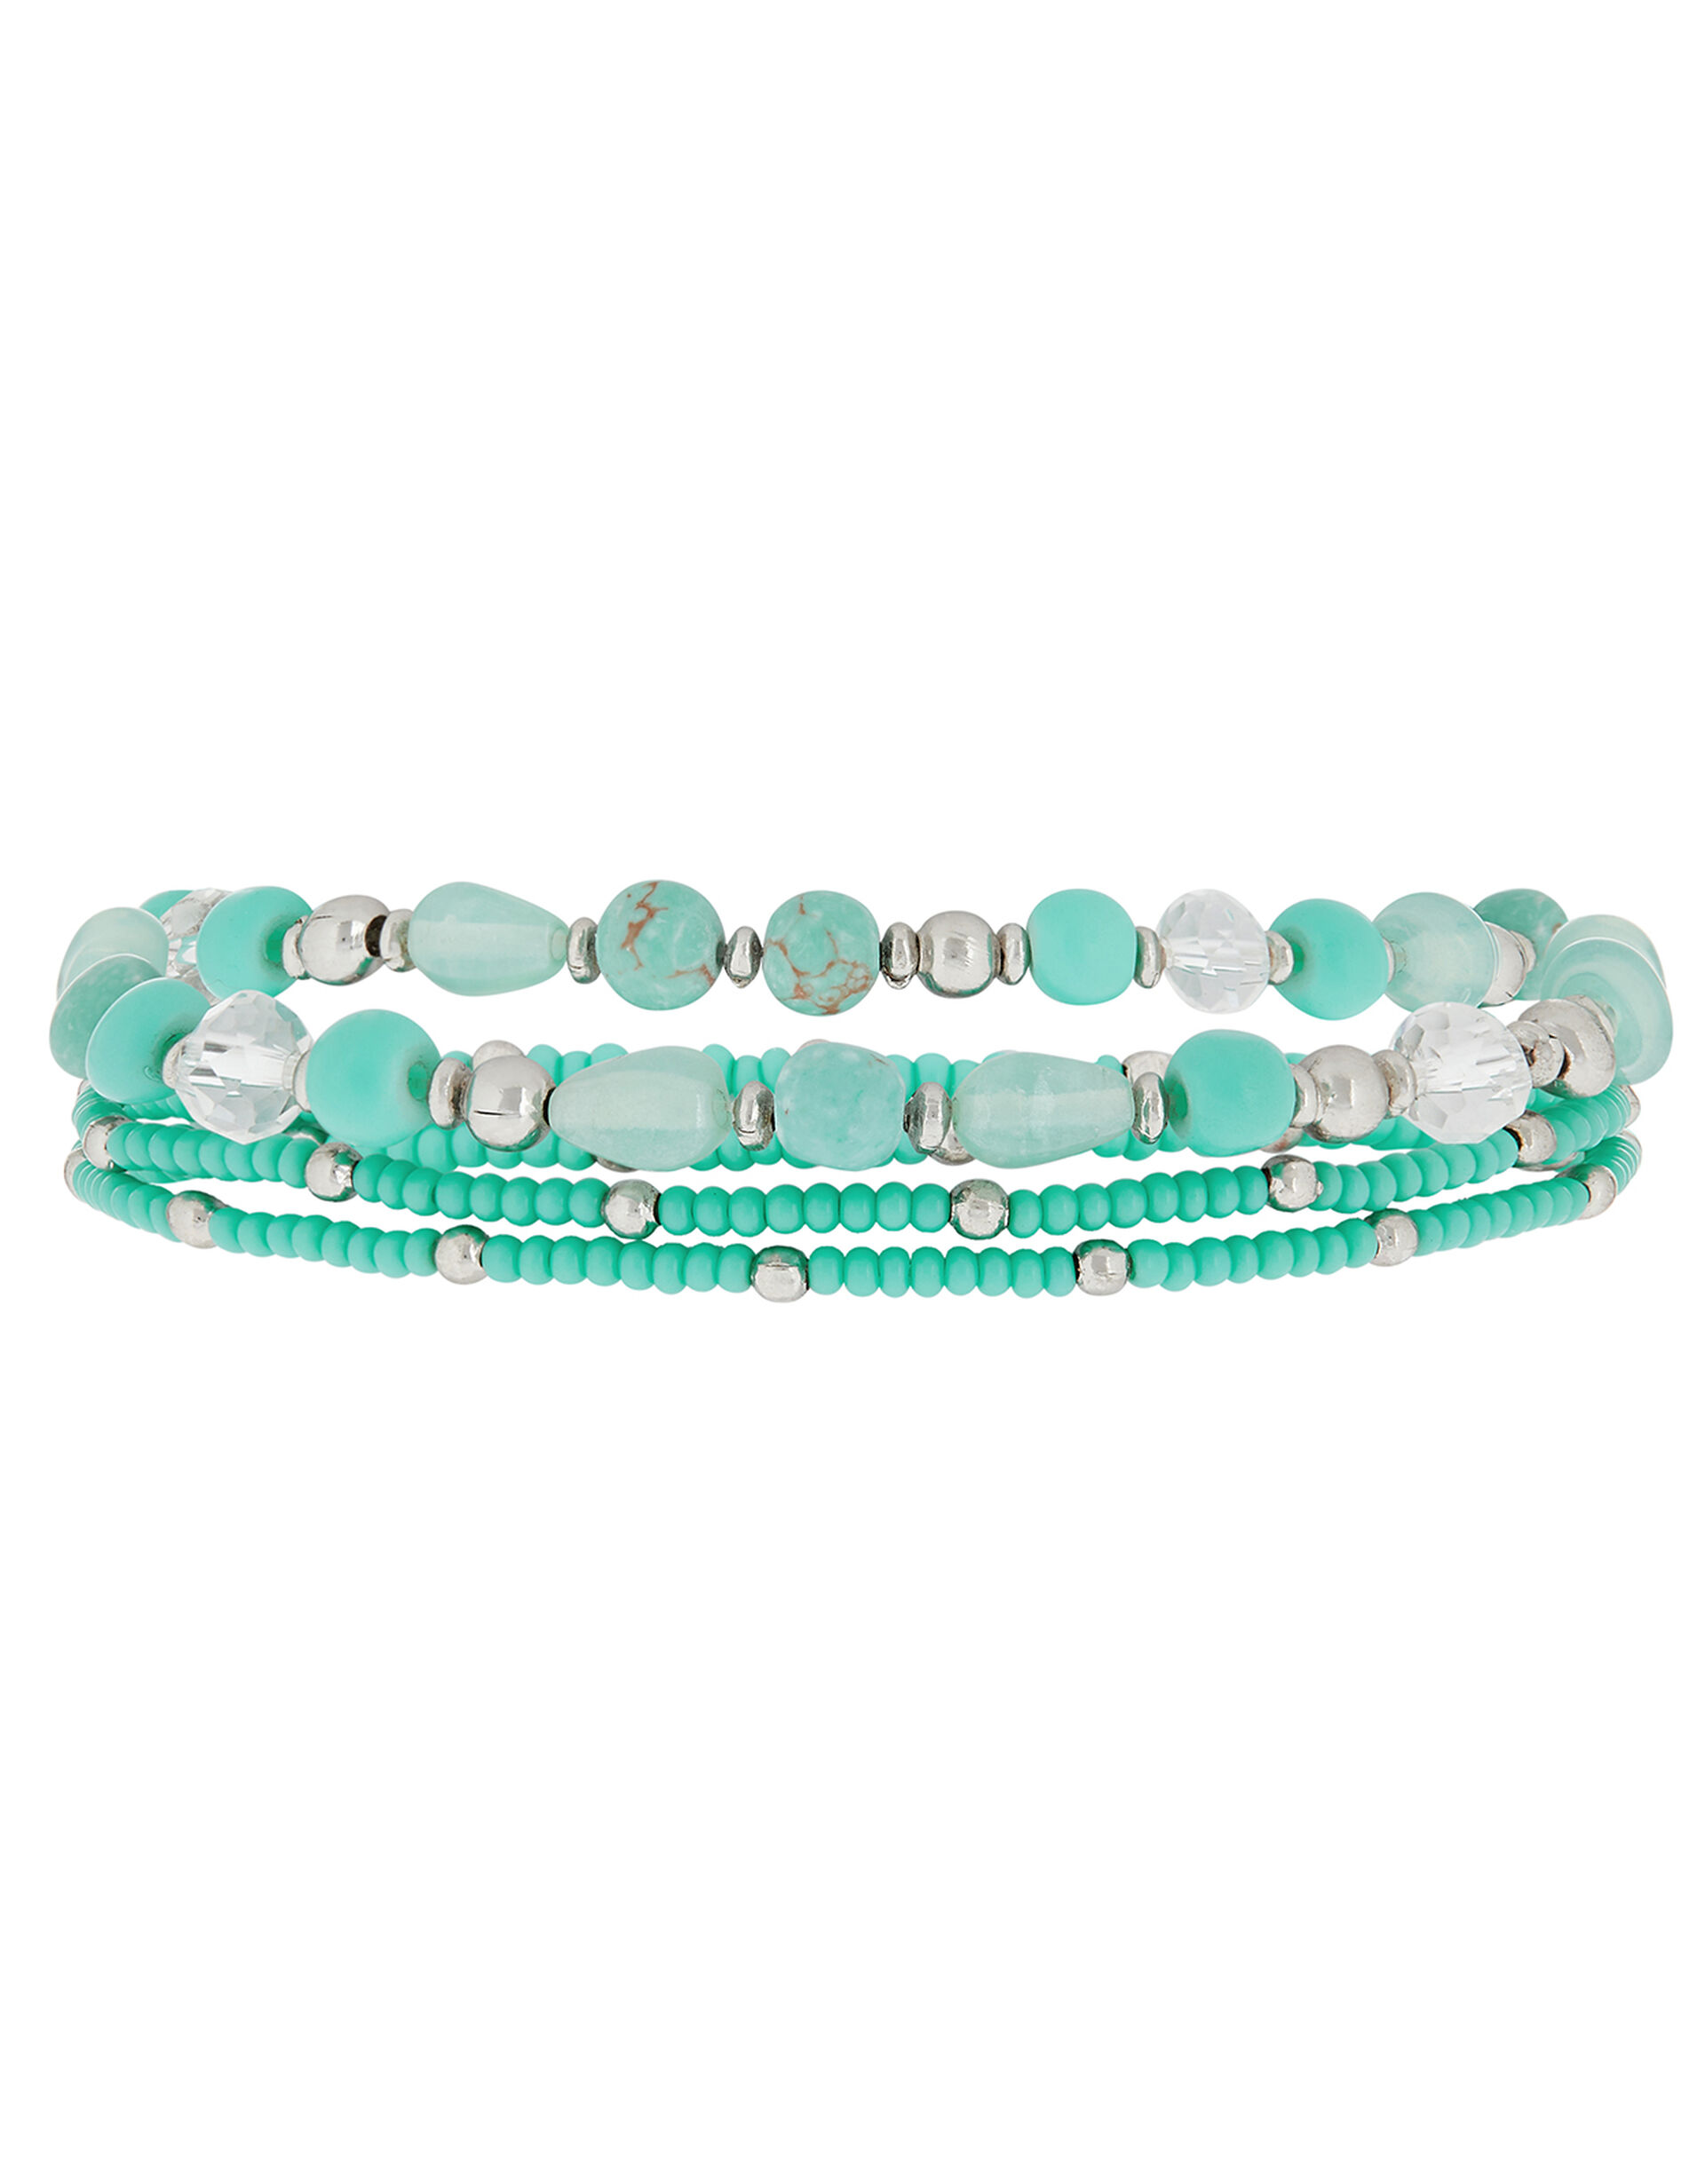 Turquoise Bead Stretch Bracelet Set, , large